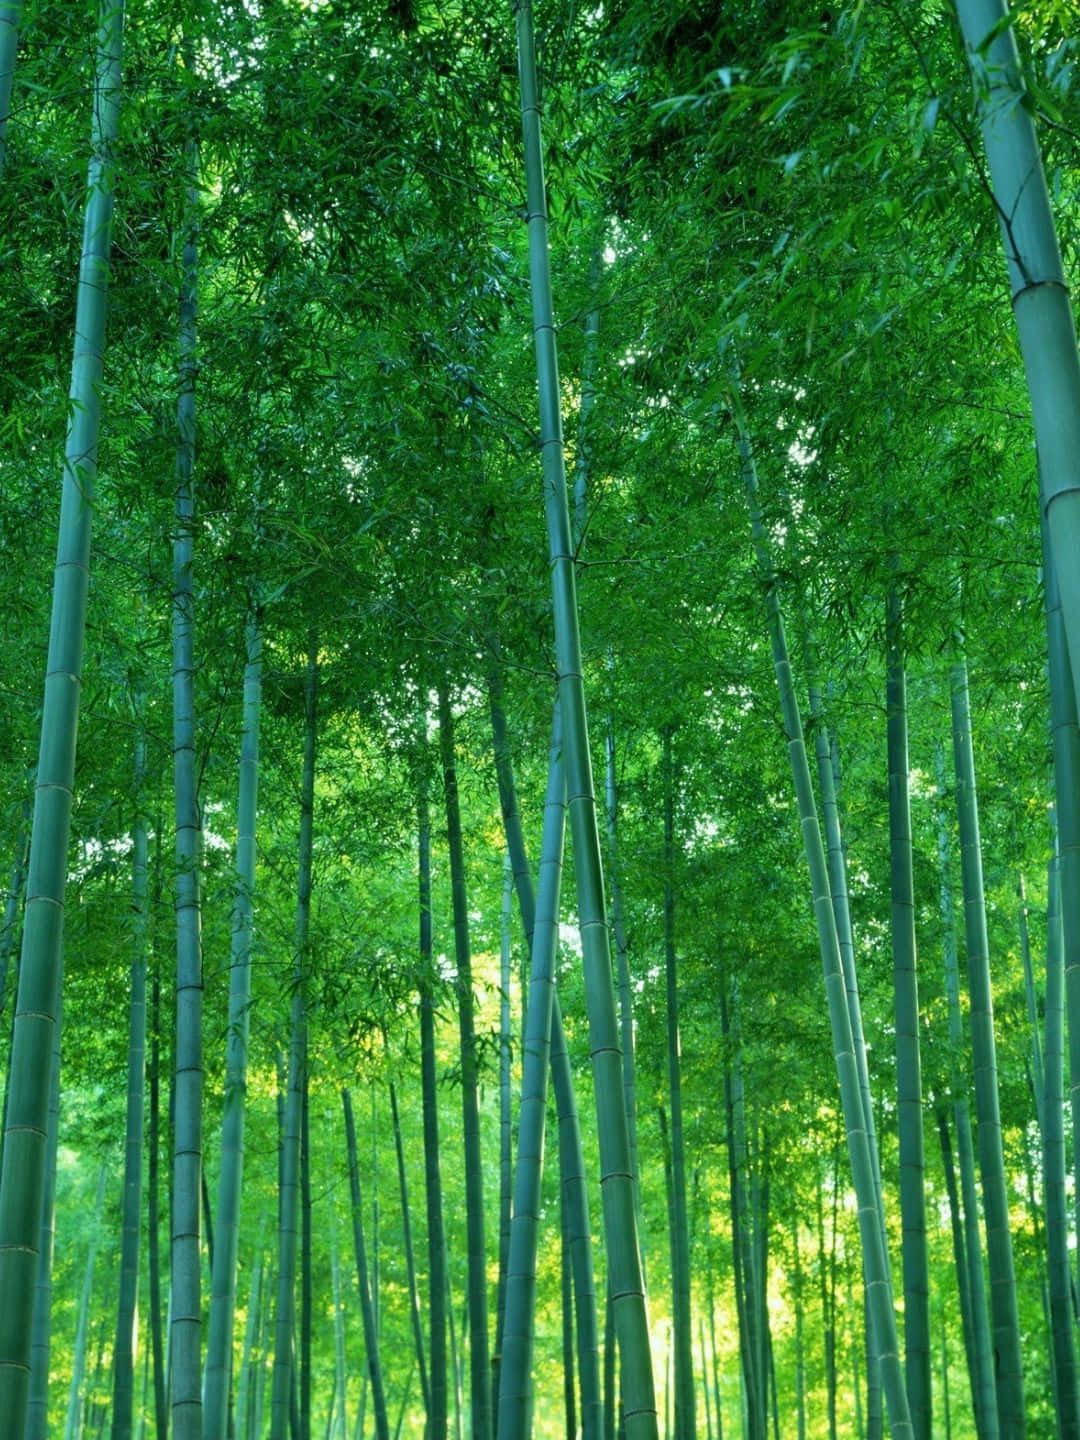 Fondode Pantalla De Bambú En 1440p Con Un Ambiente Oscuro Y Verde Vibrante.